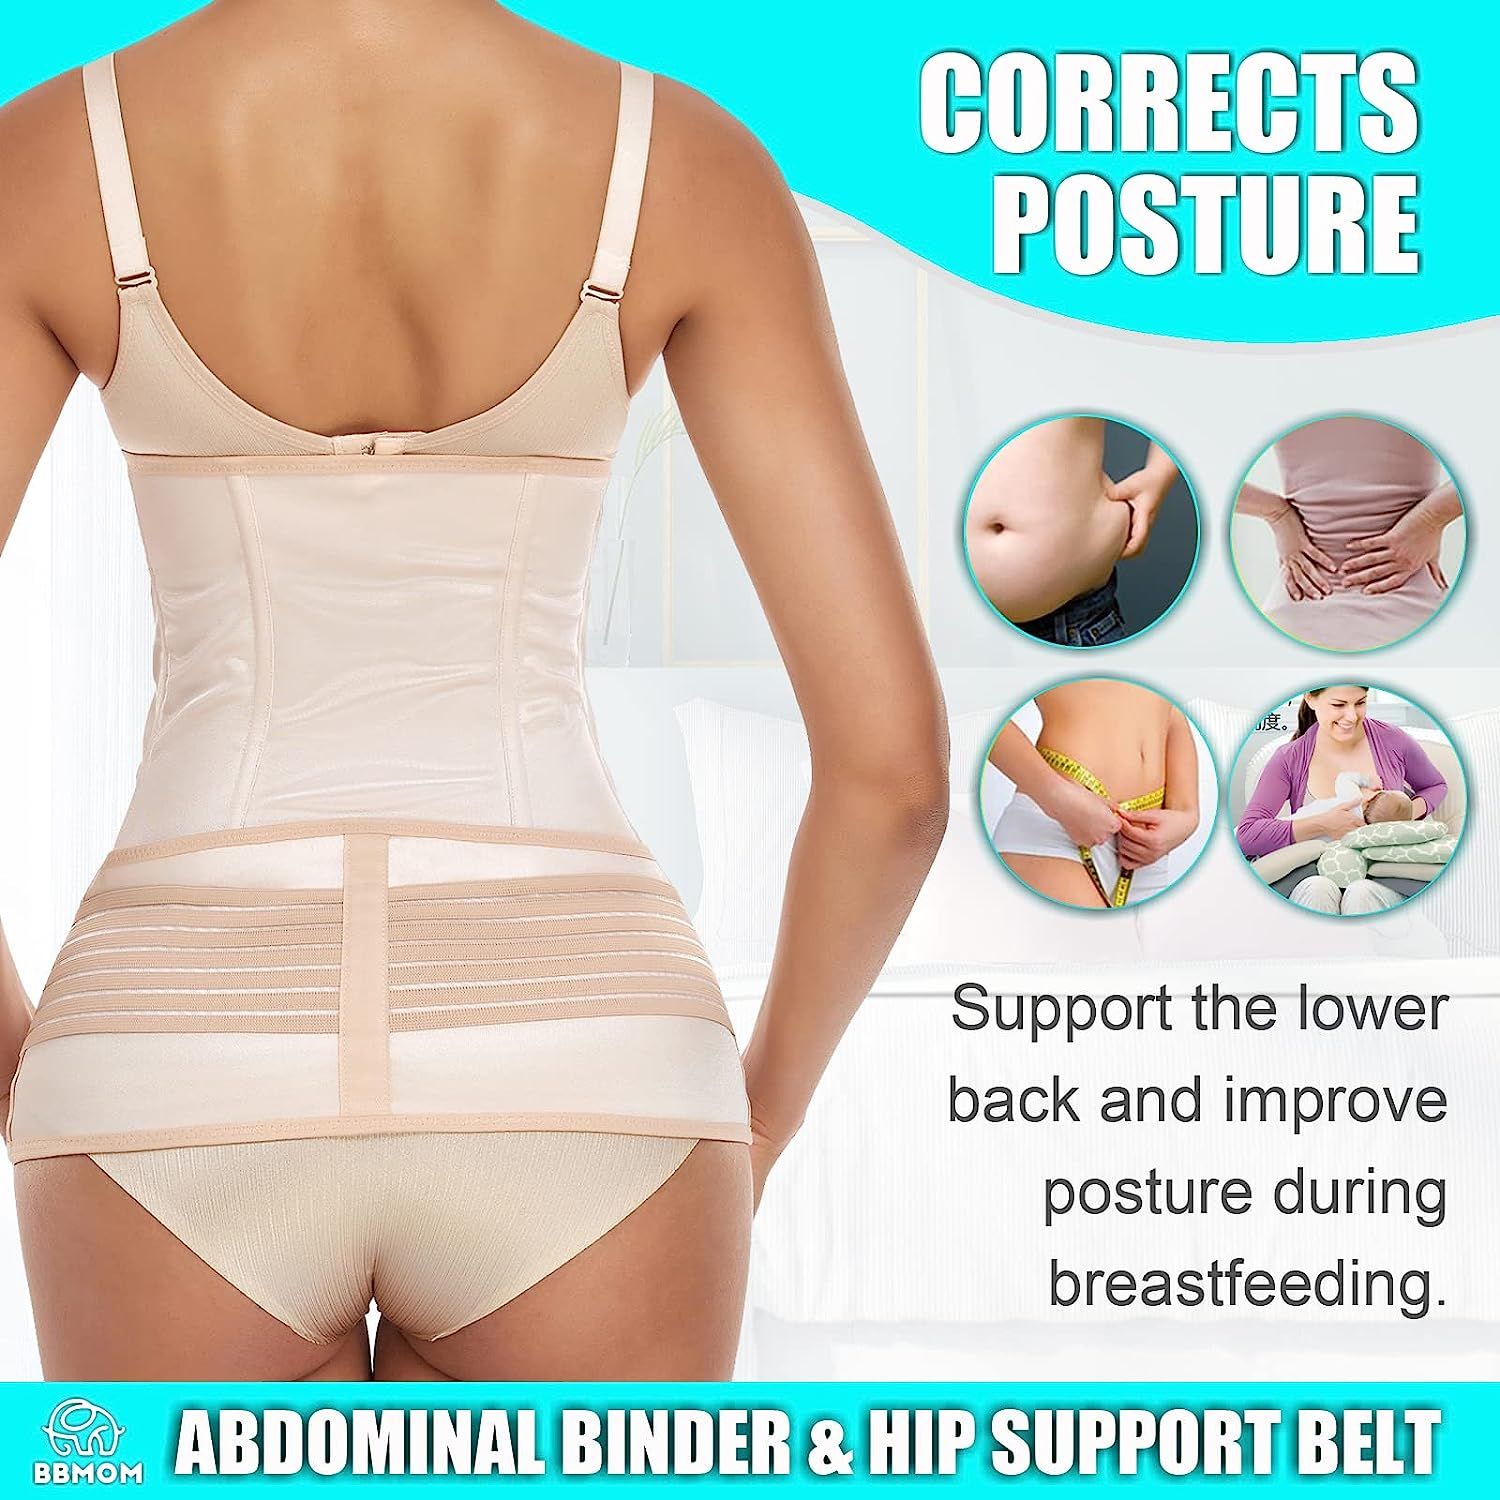 COIF Belly Compression Belt Postpartum Tummy Tuck Belt Provide